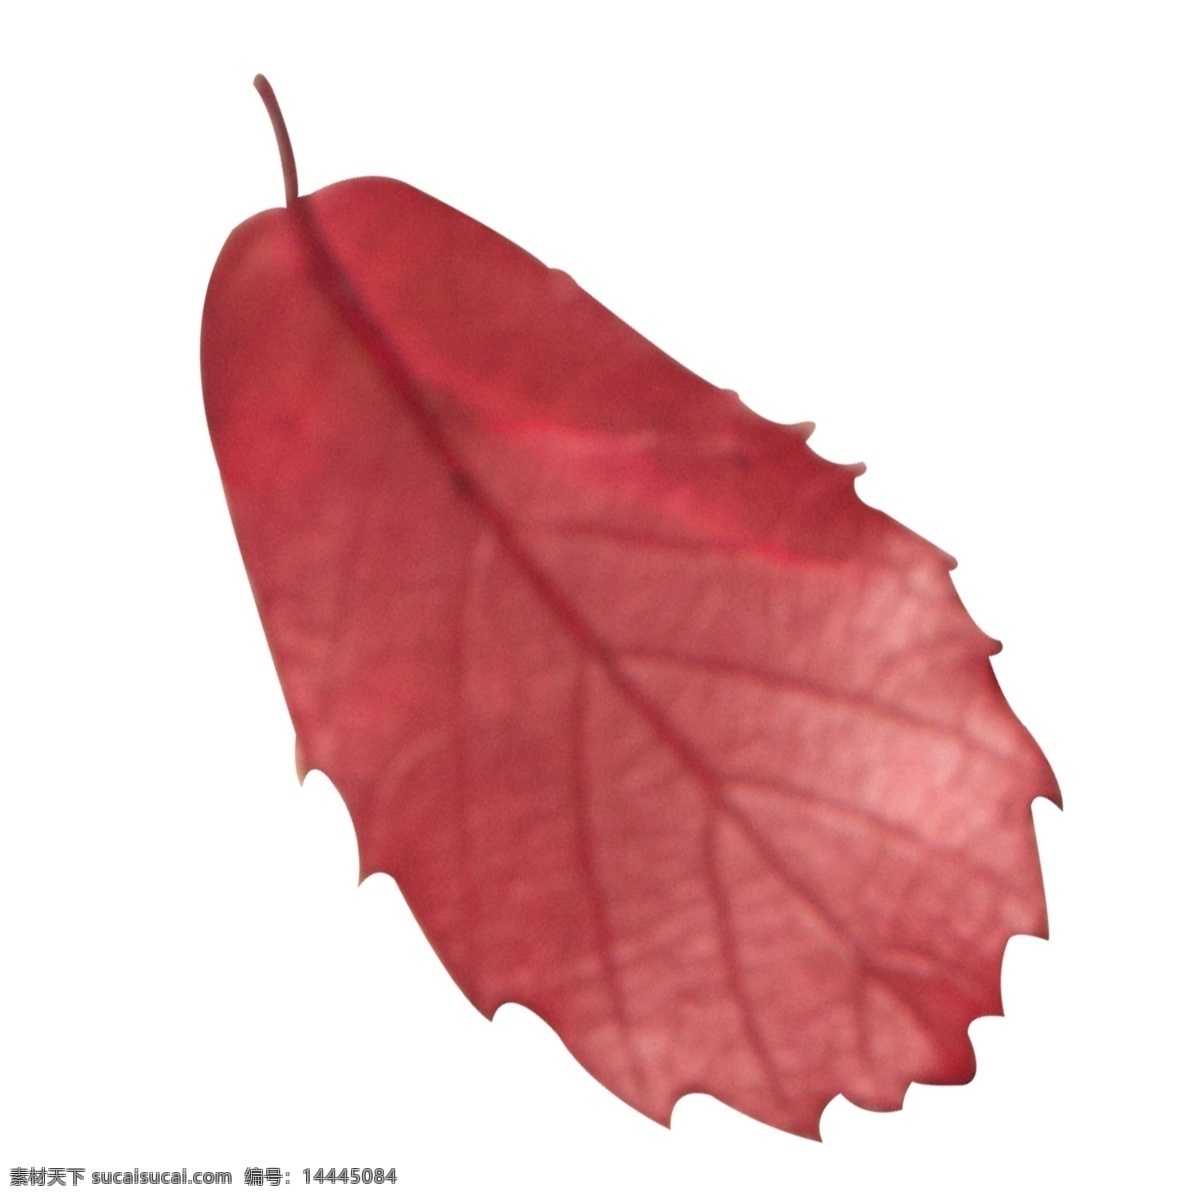 实拍 秋天 红色 树叶 叶 叶子 红色叶子 枫叶 红色枫叶 红色枫叶叶子 枫树叶子